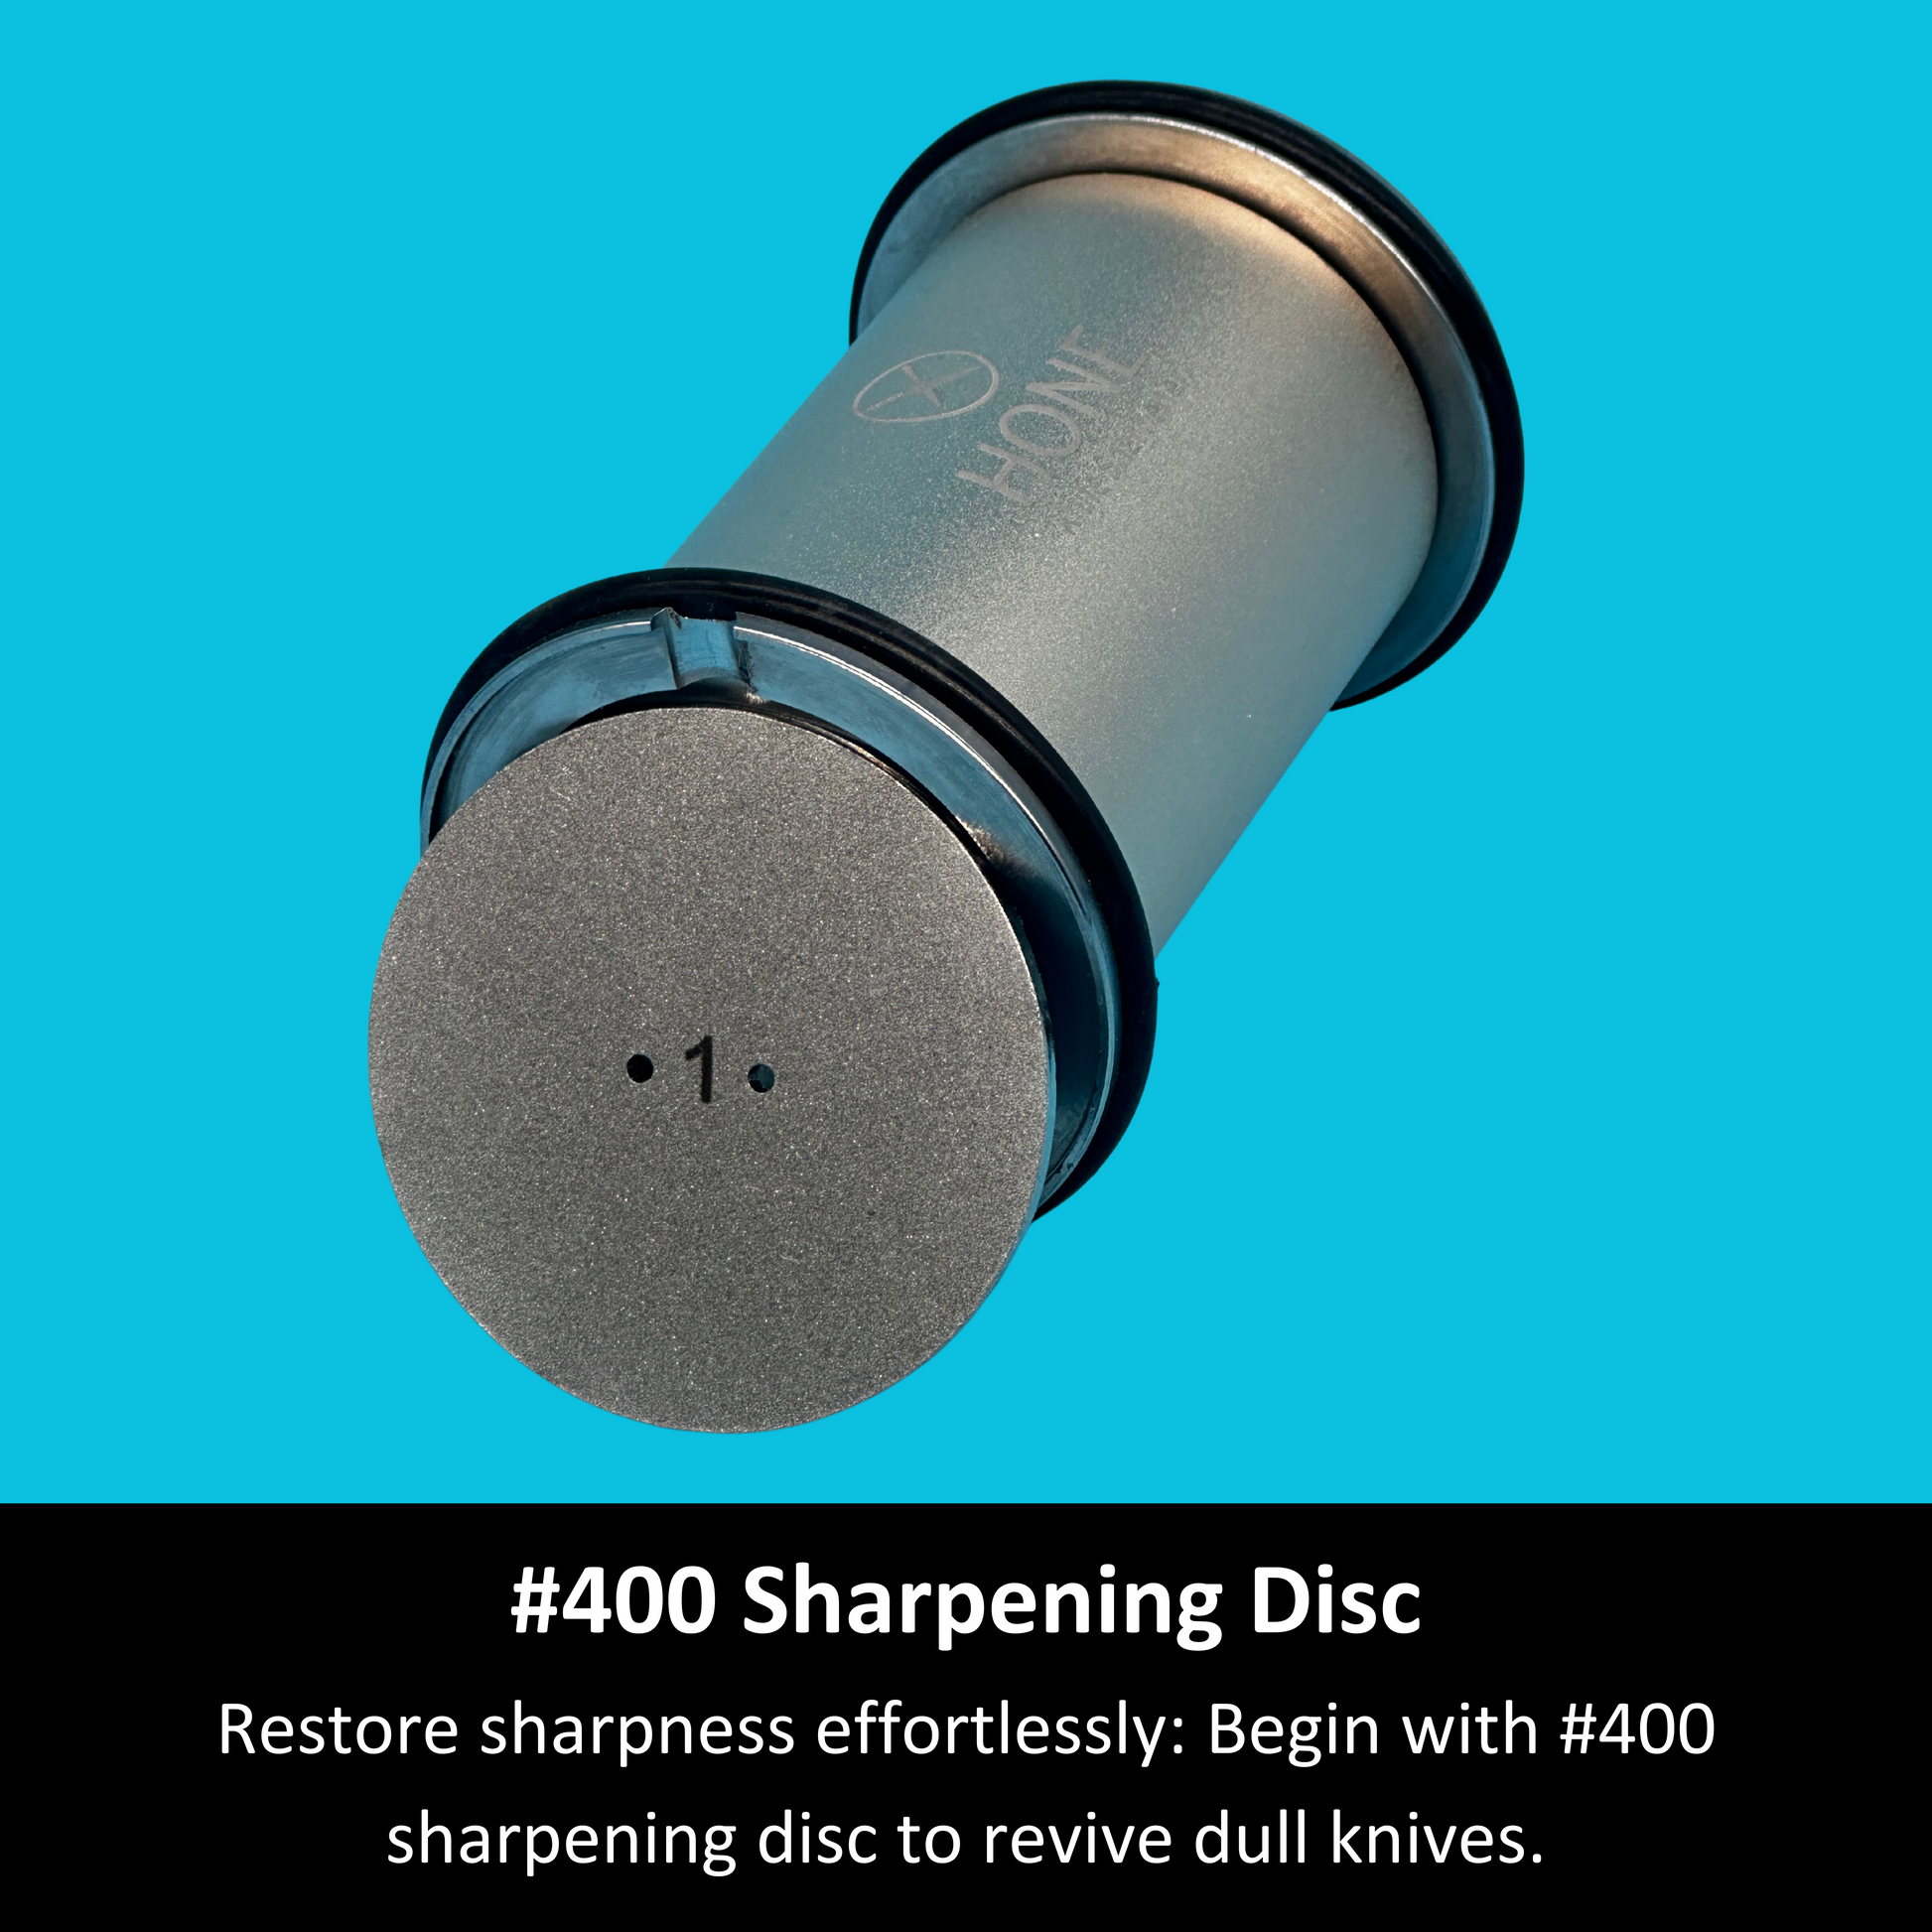 Pre-order the HONE Knife Sharpener: receive a free #3000 Ceramic Disc